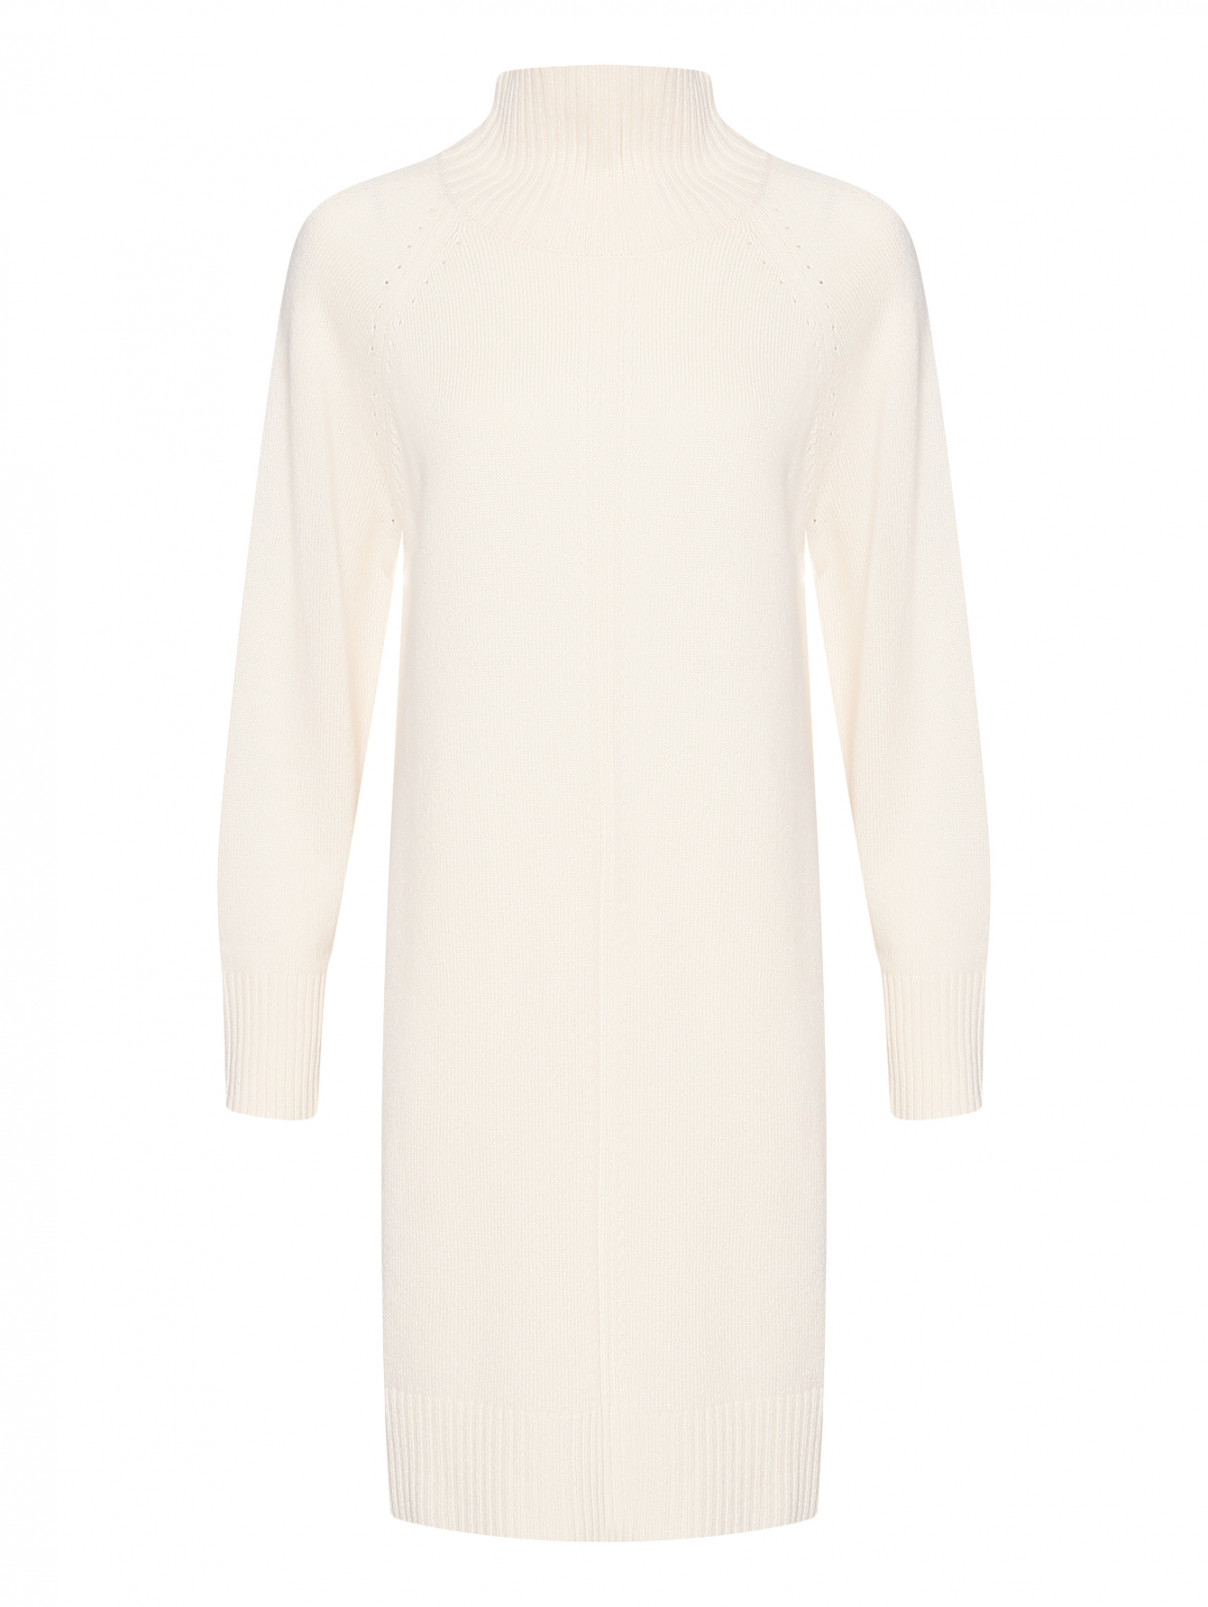 Трикотажное платье из шерсти и кашемира Max Mara  –  Общий вид  – Цвет:  Белый